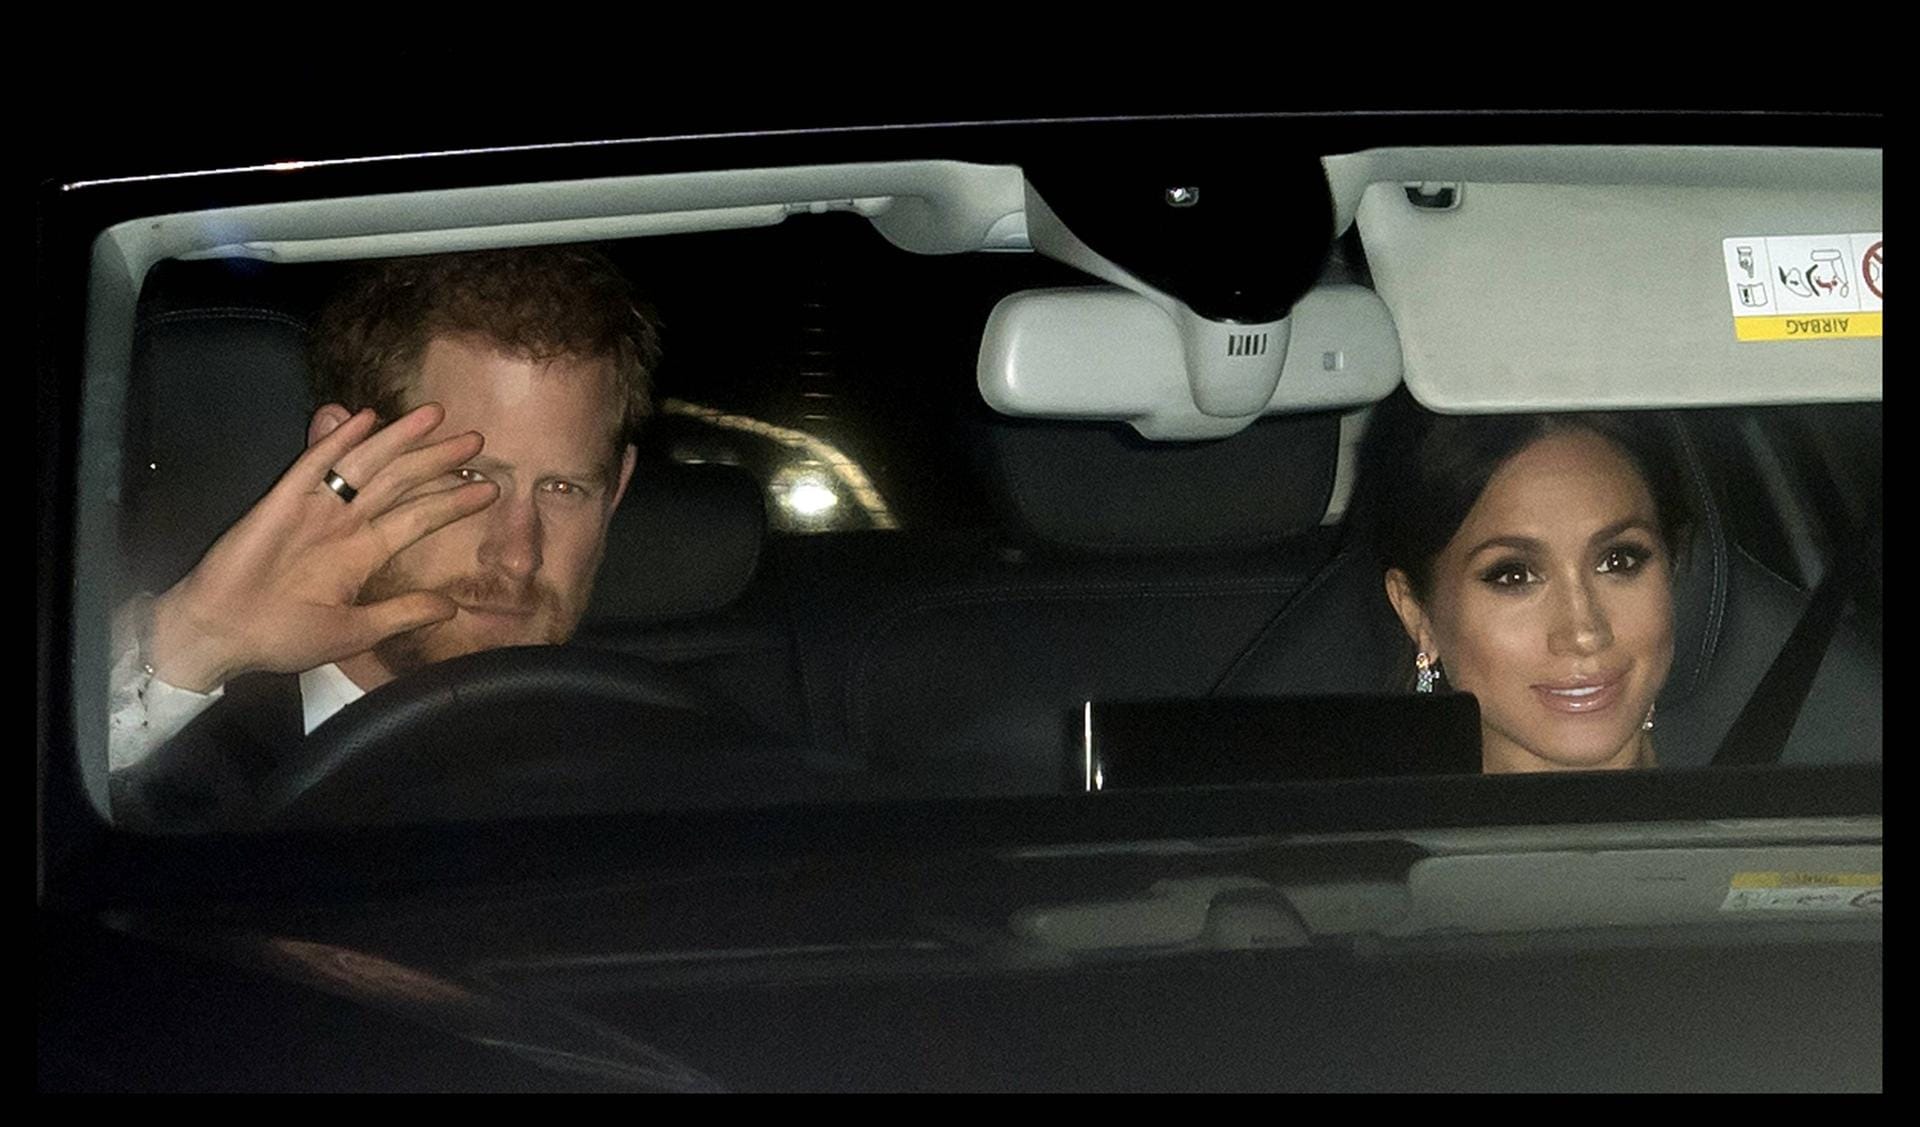 Auf dem Weg zur Party: Prinz Harry und Herzogin Meghan fahren vor.